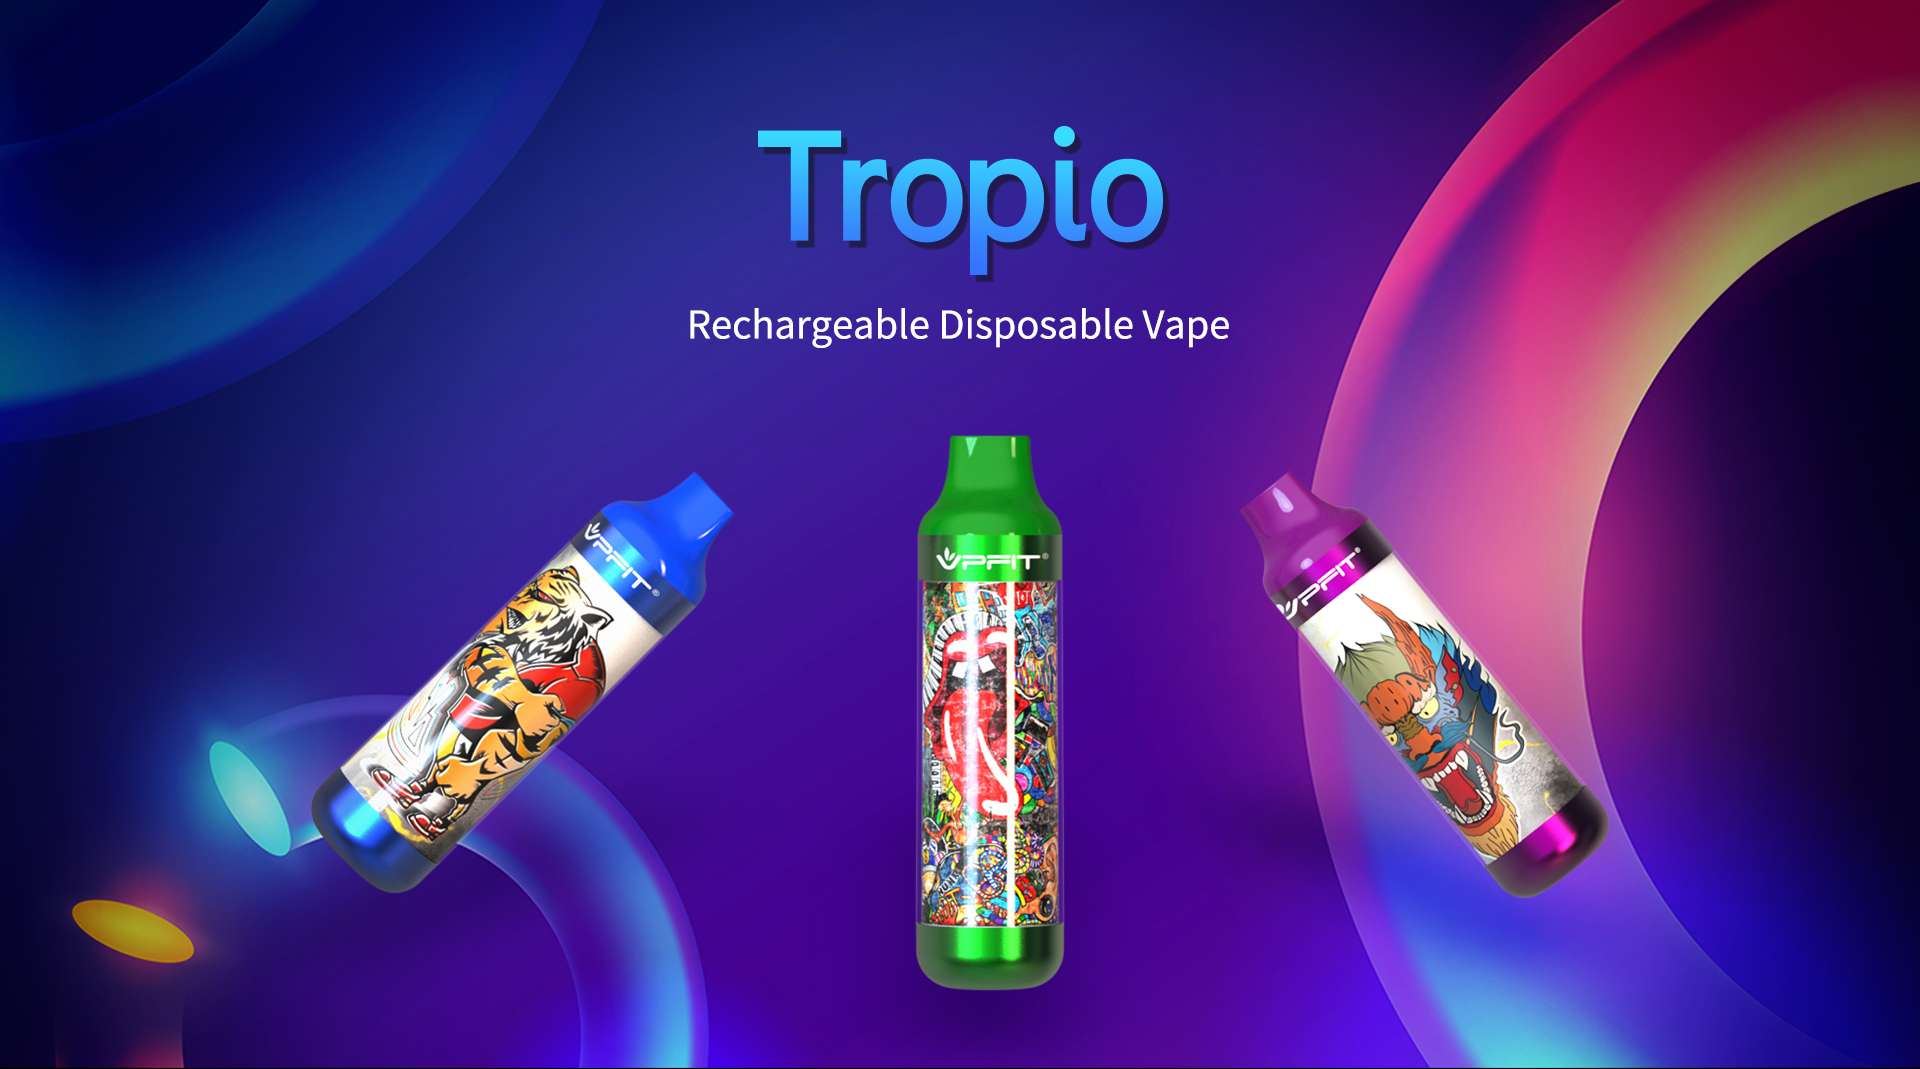 Tropio rechargeable disposable vape